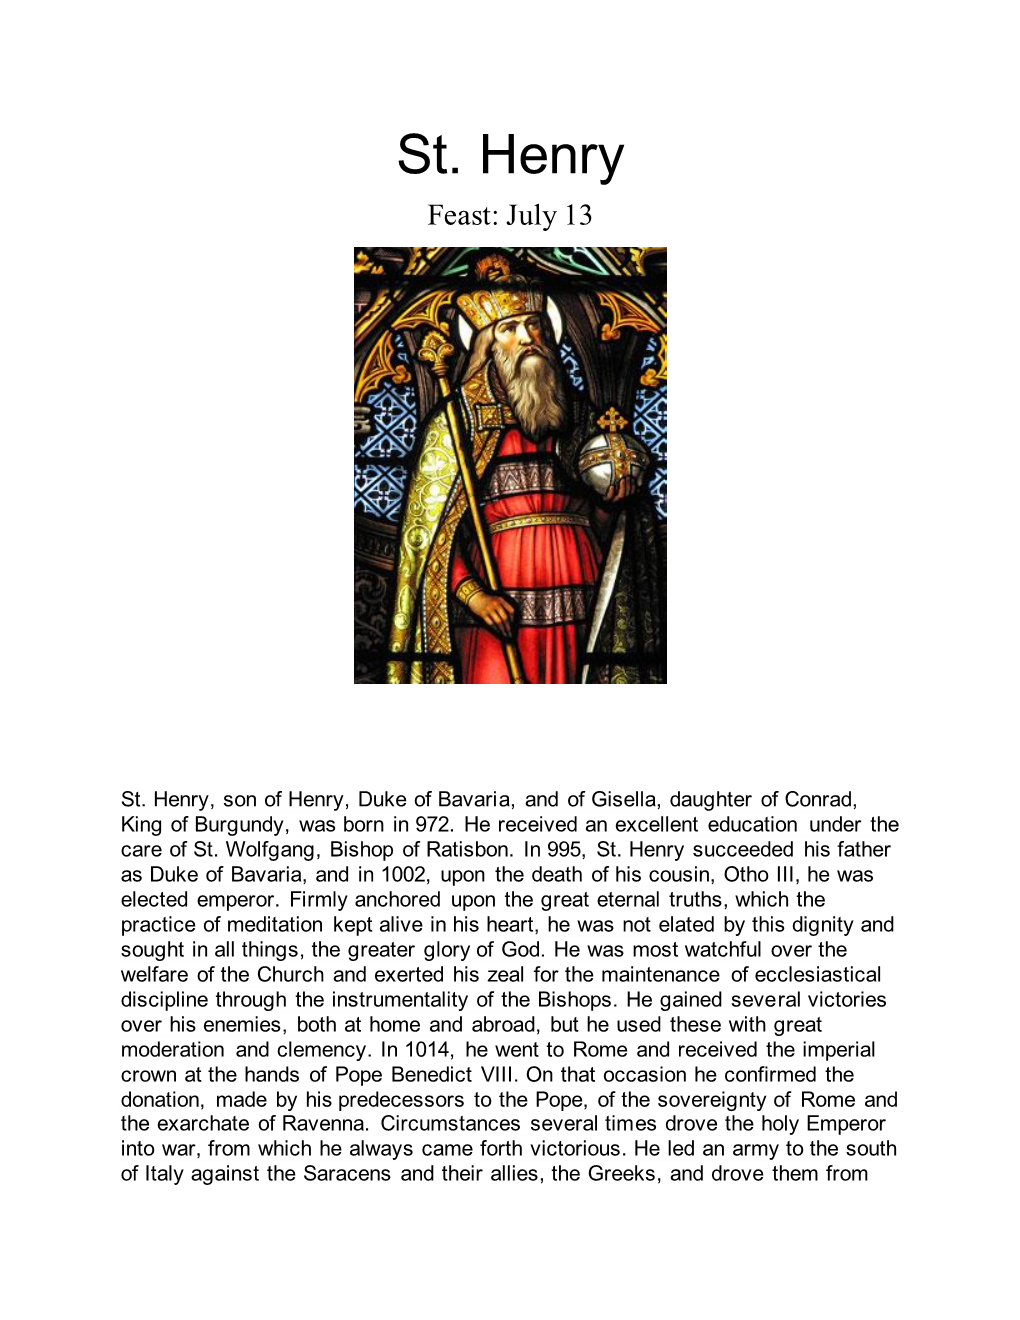 St. Henry Feast: July 13